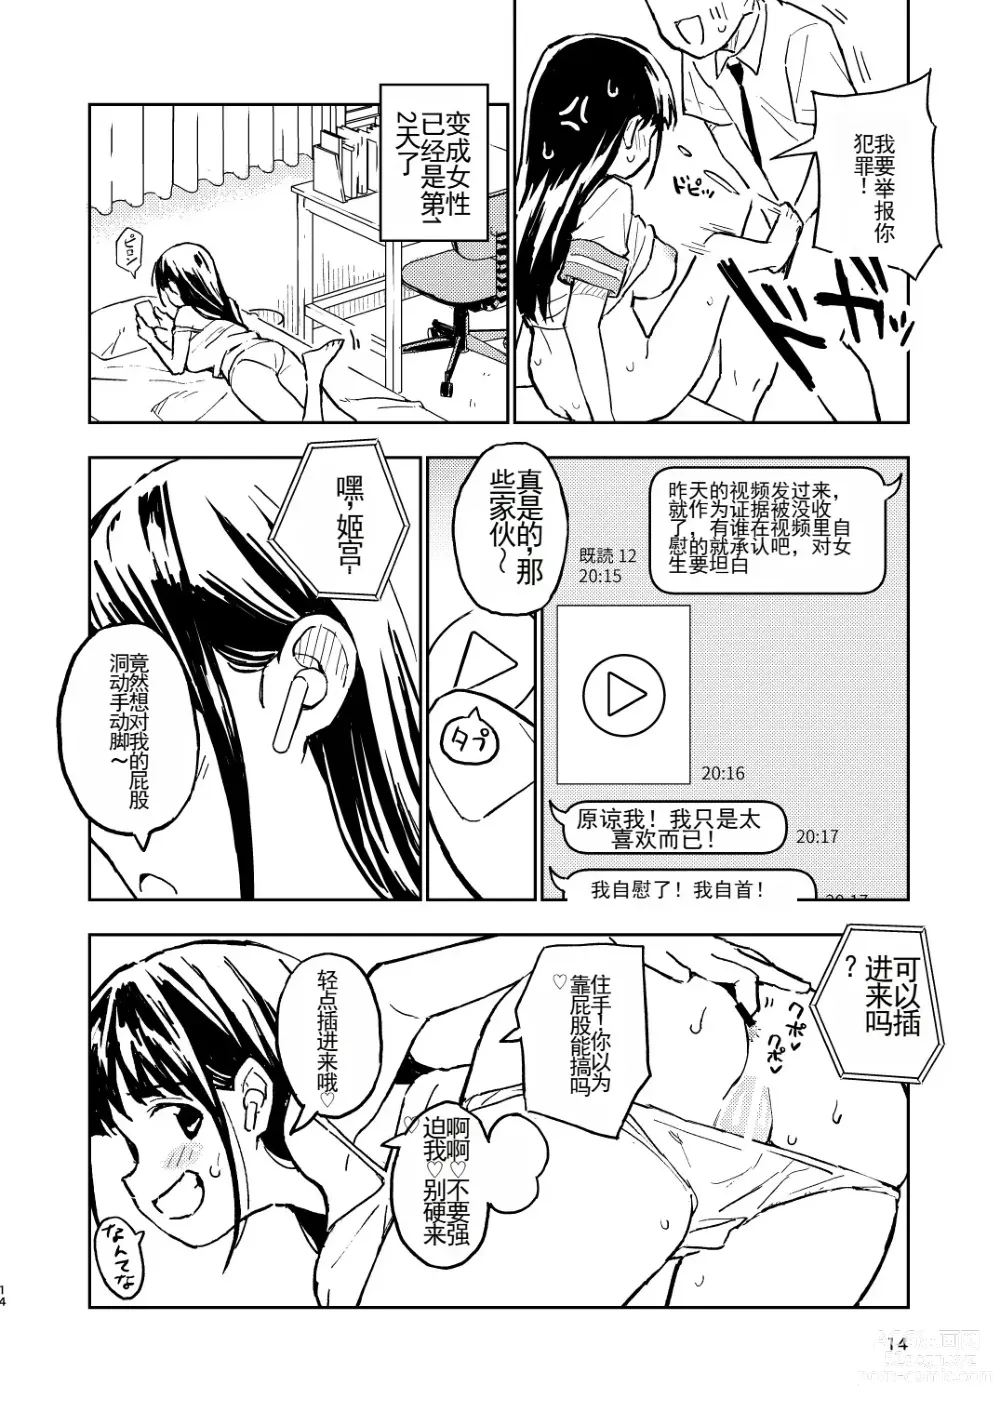 Page 14 of doujinshi 1-kagetsu Ninshin Shinakereba Otoko ni Modoreru Hanashi